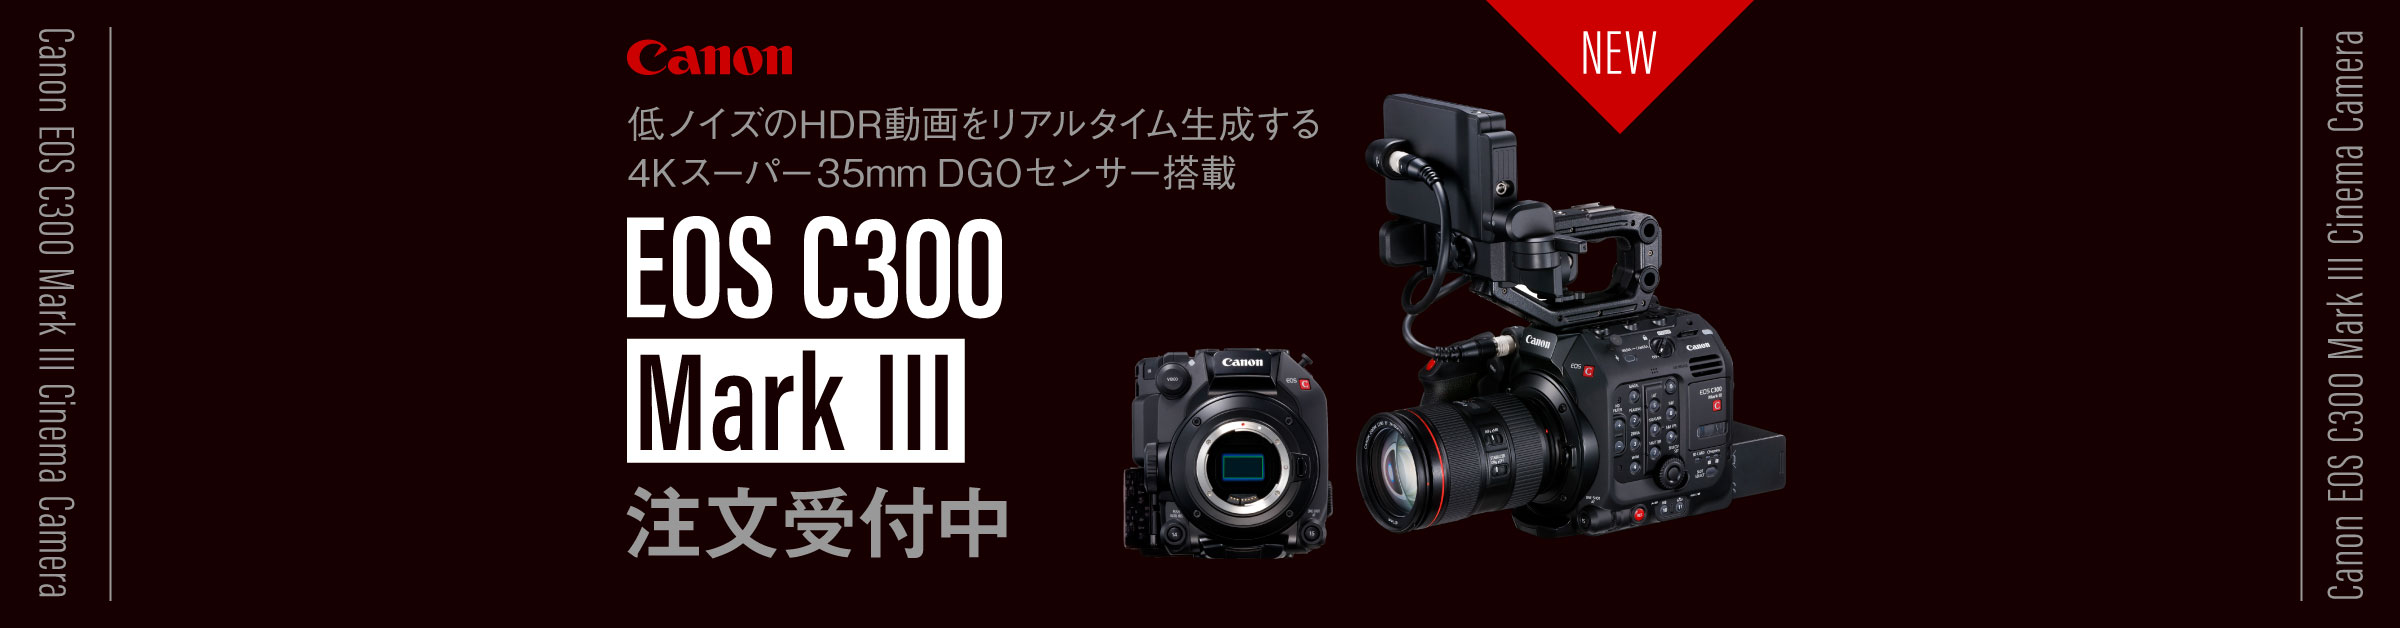 新製品】キヤノンからデジタルシネマカメラEOS C300 Mark IIIが発表